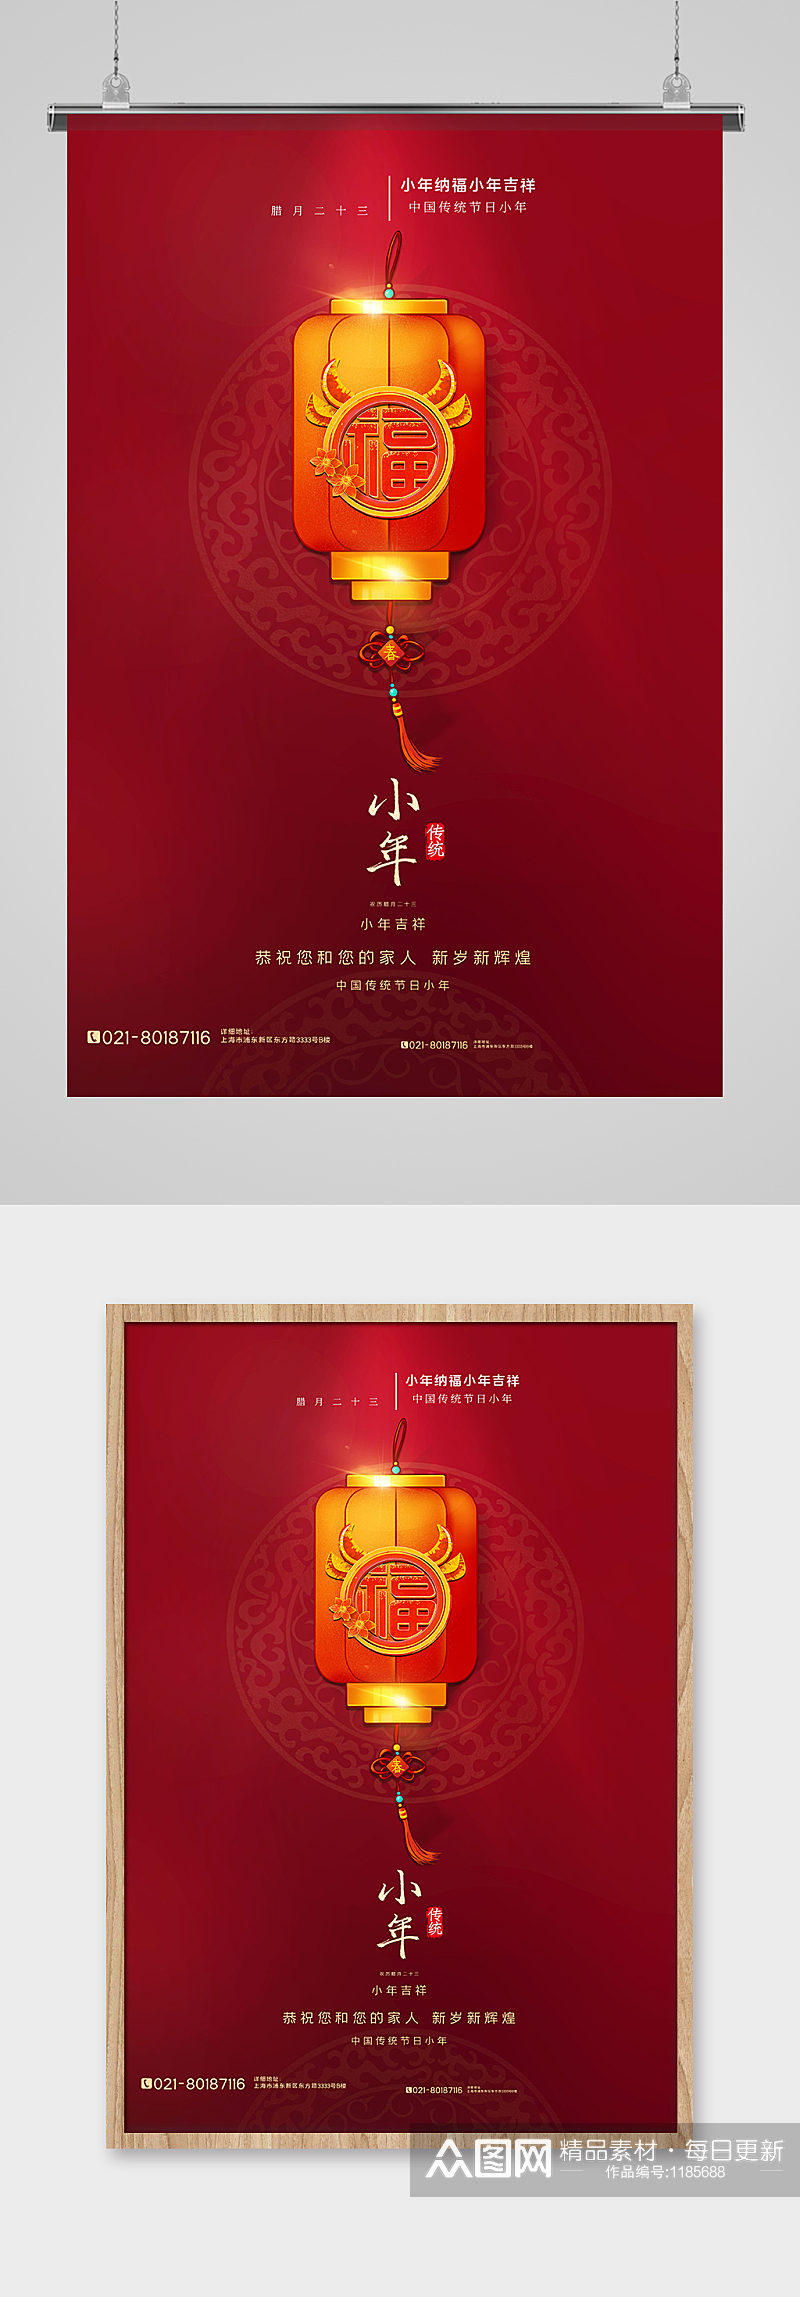 红色极简风小年传统节日海报素材